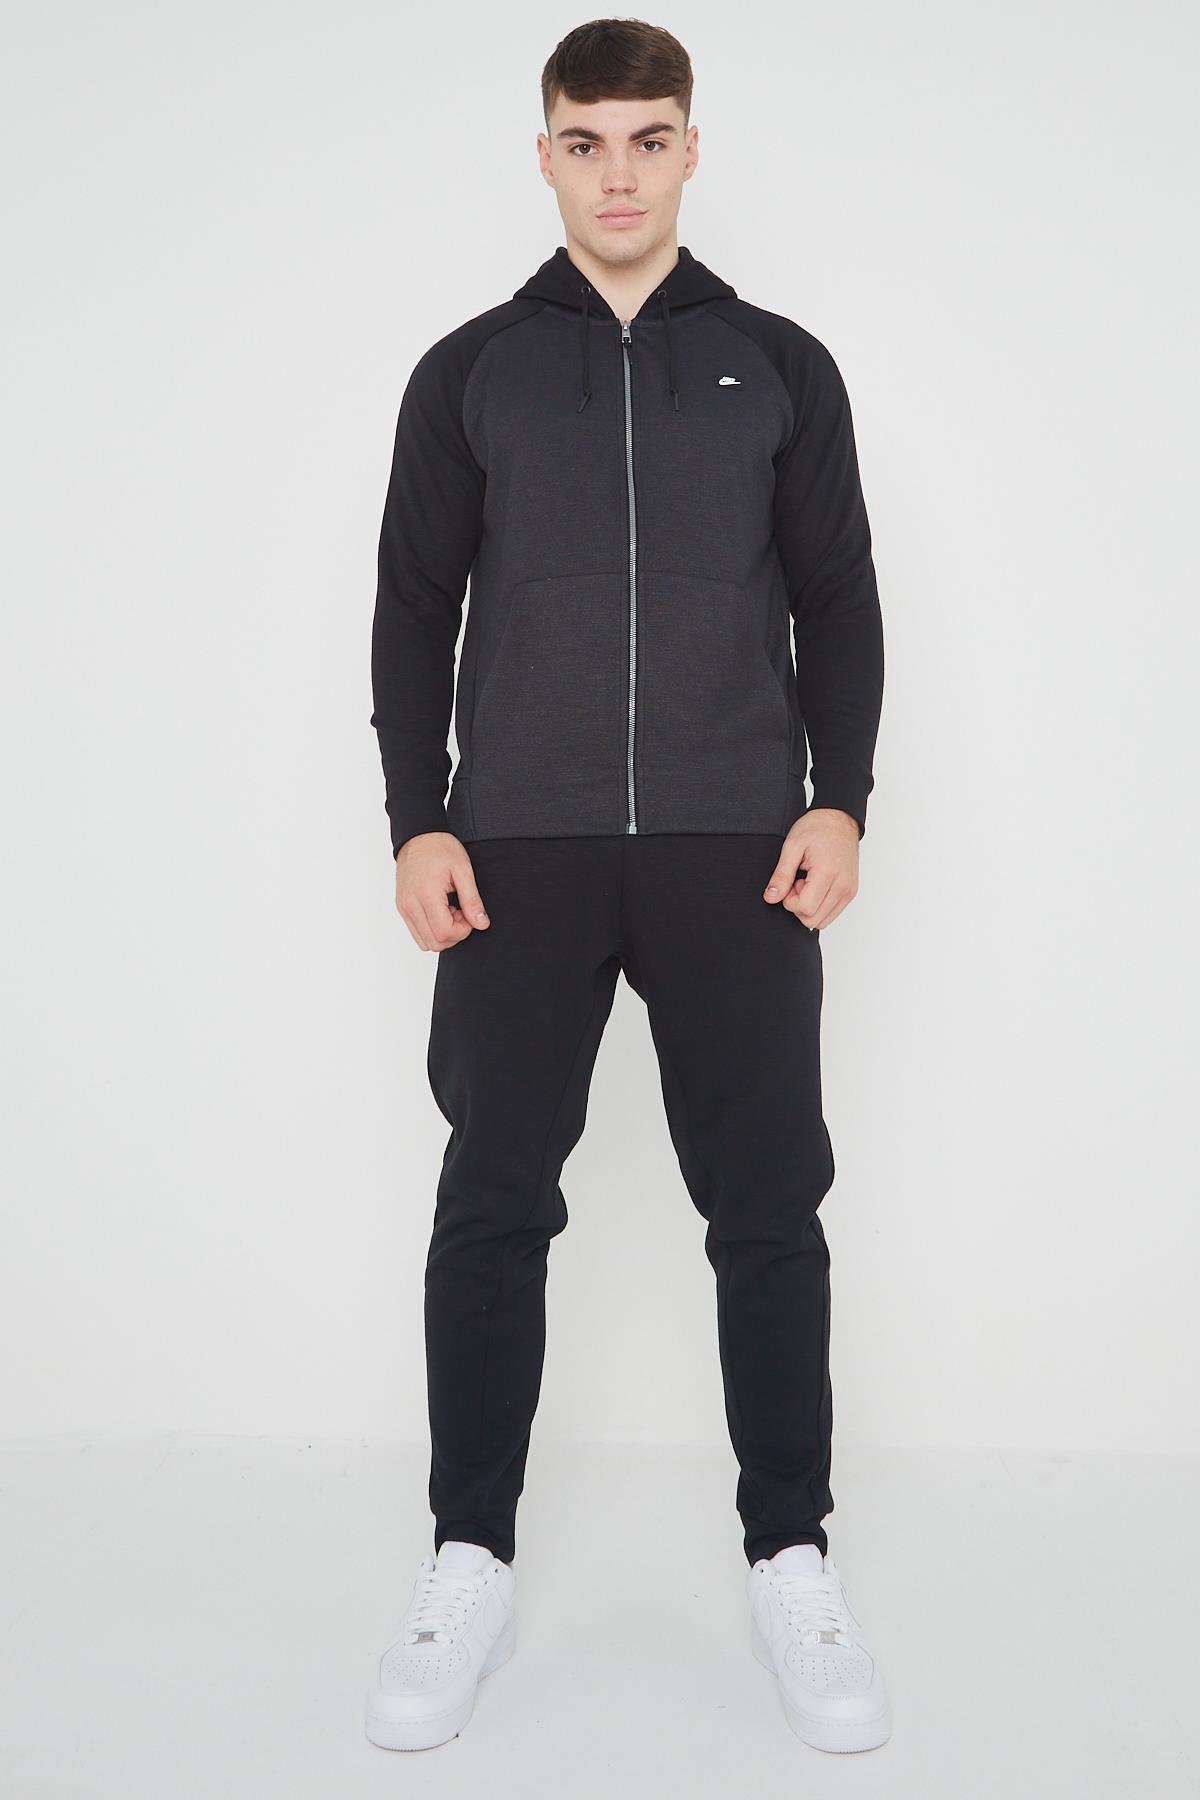 Zeeanemoon Onhandig Kostbaar Nike Sportswear Optic trainingspak voor heren in zwart